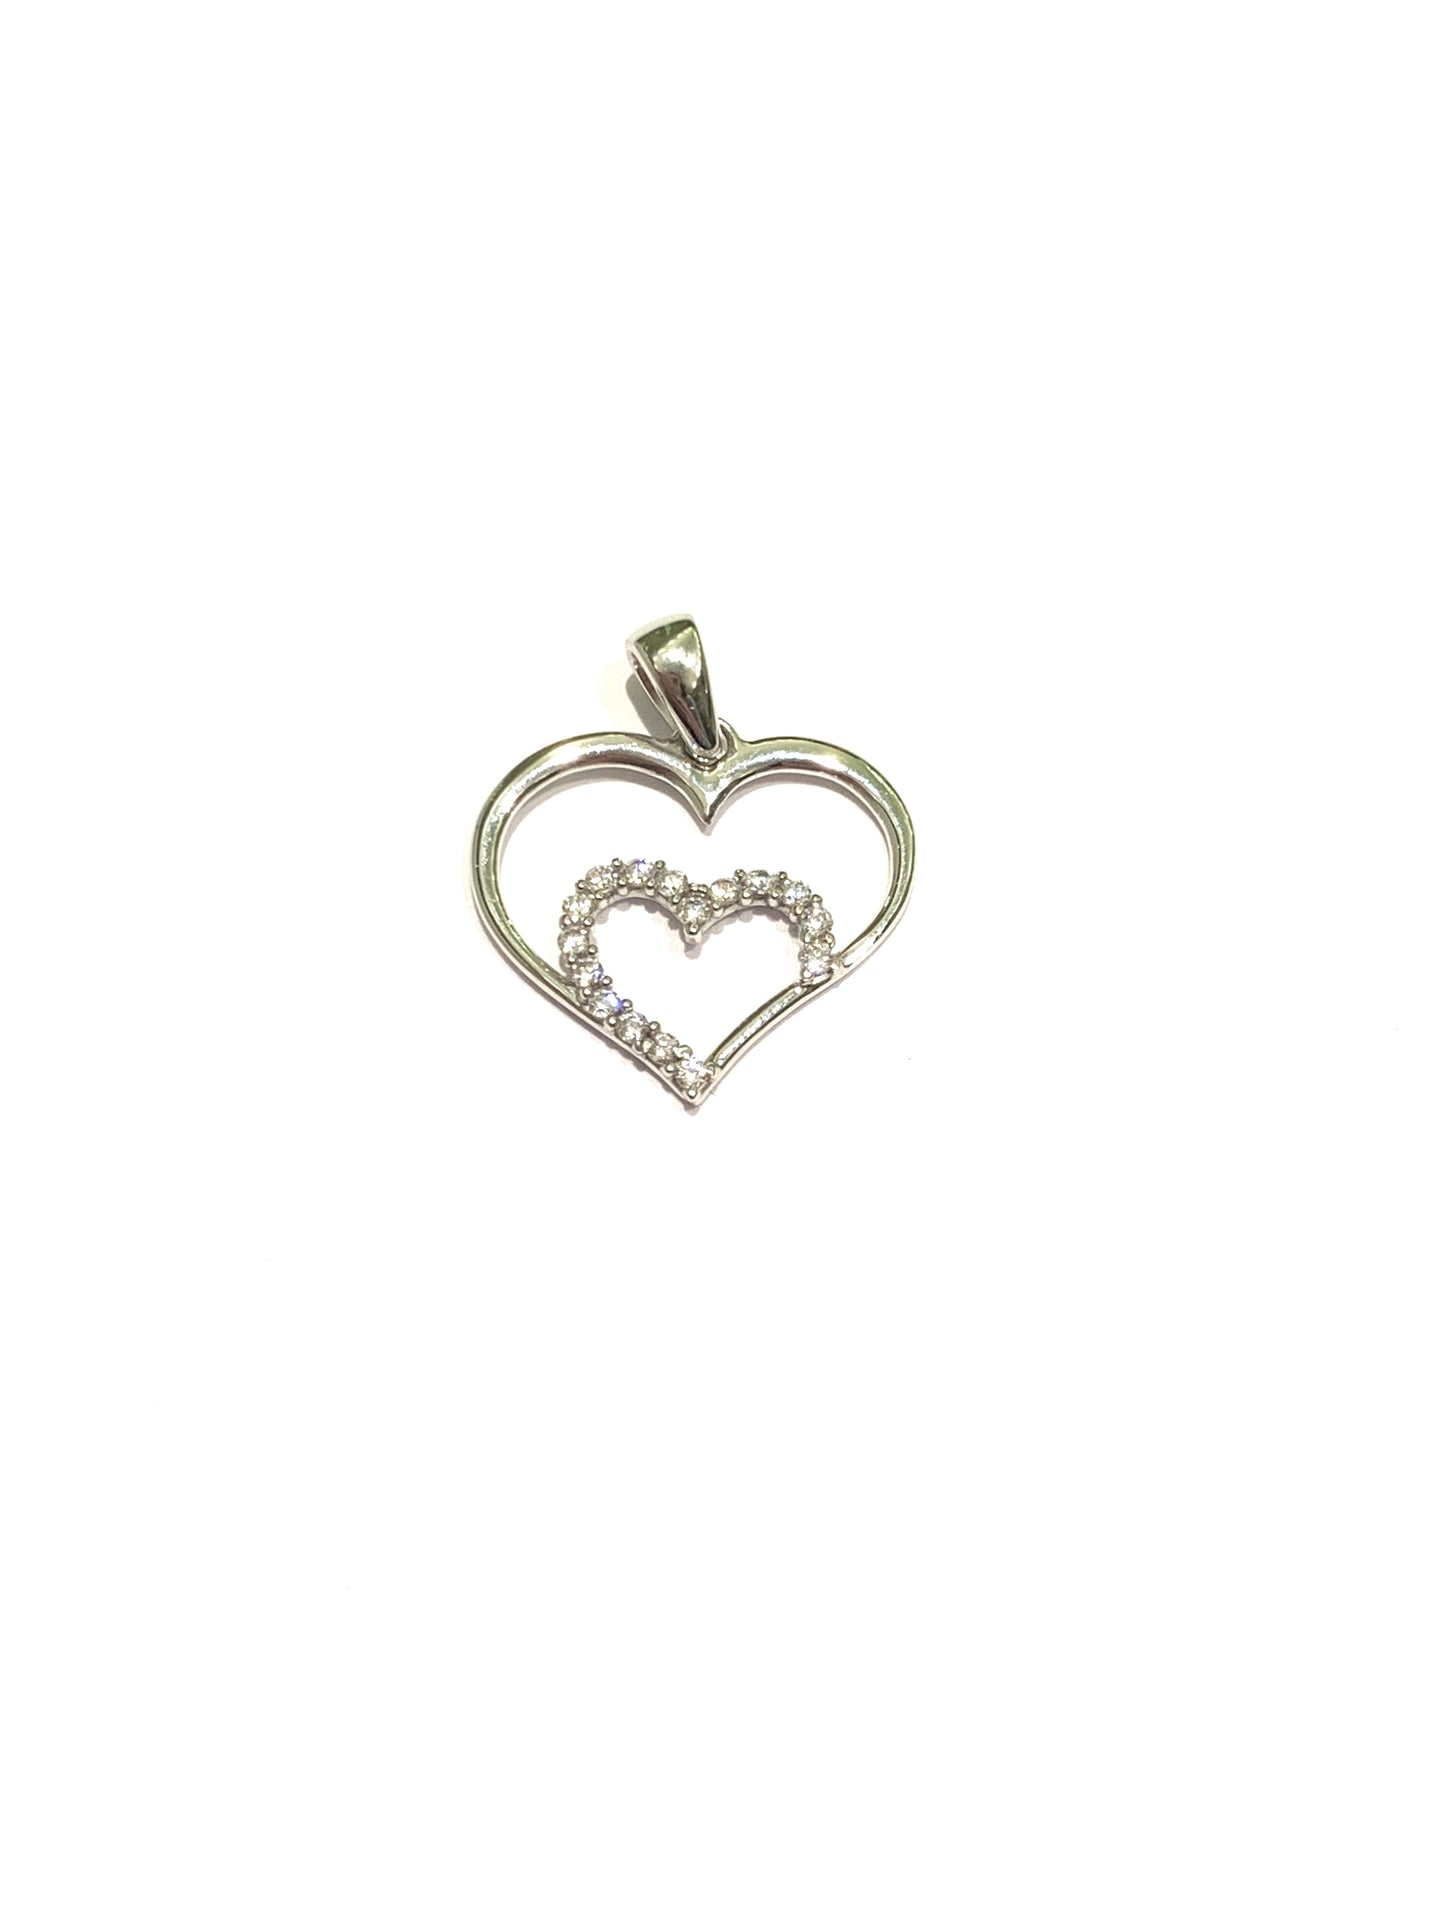 Ciondolo per collana in oro bianco 18kt con cuore esterno liscio e cuore interno ricoperto da zirconi.  Dimensione 1,6 cm.